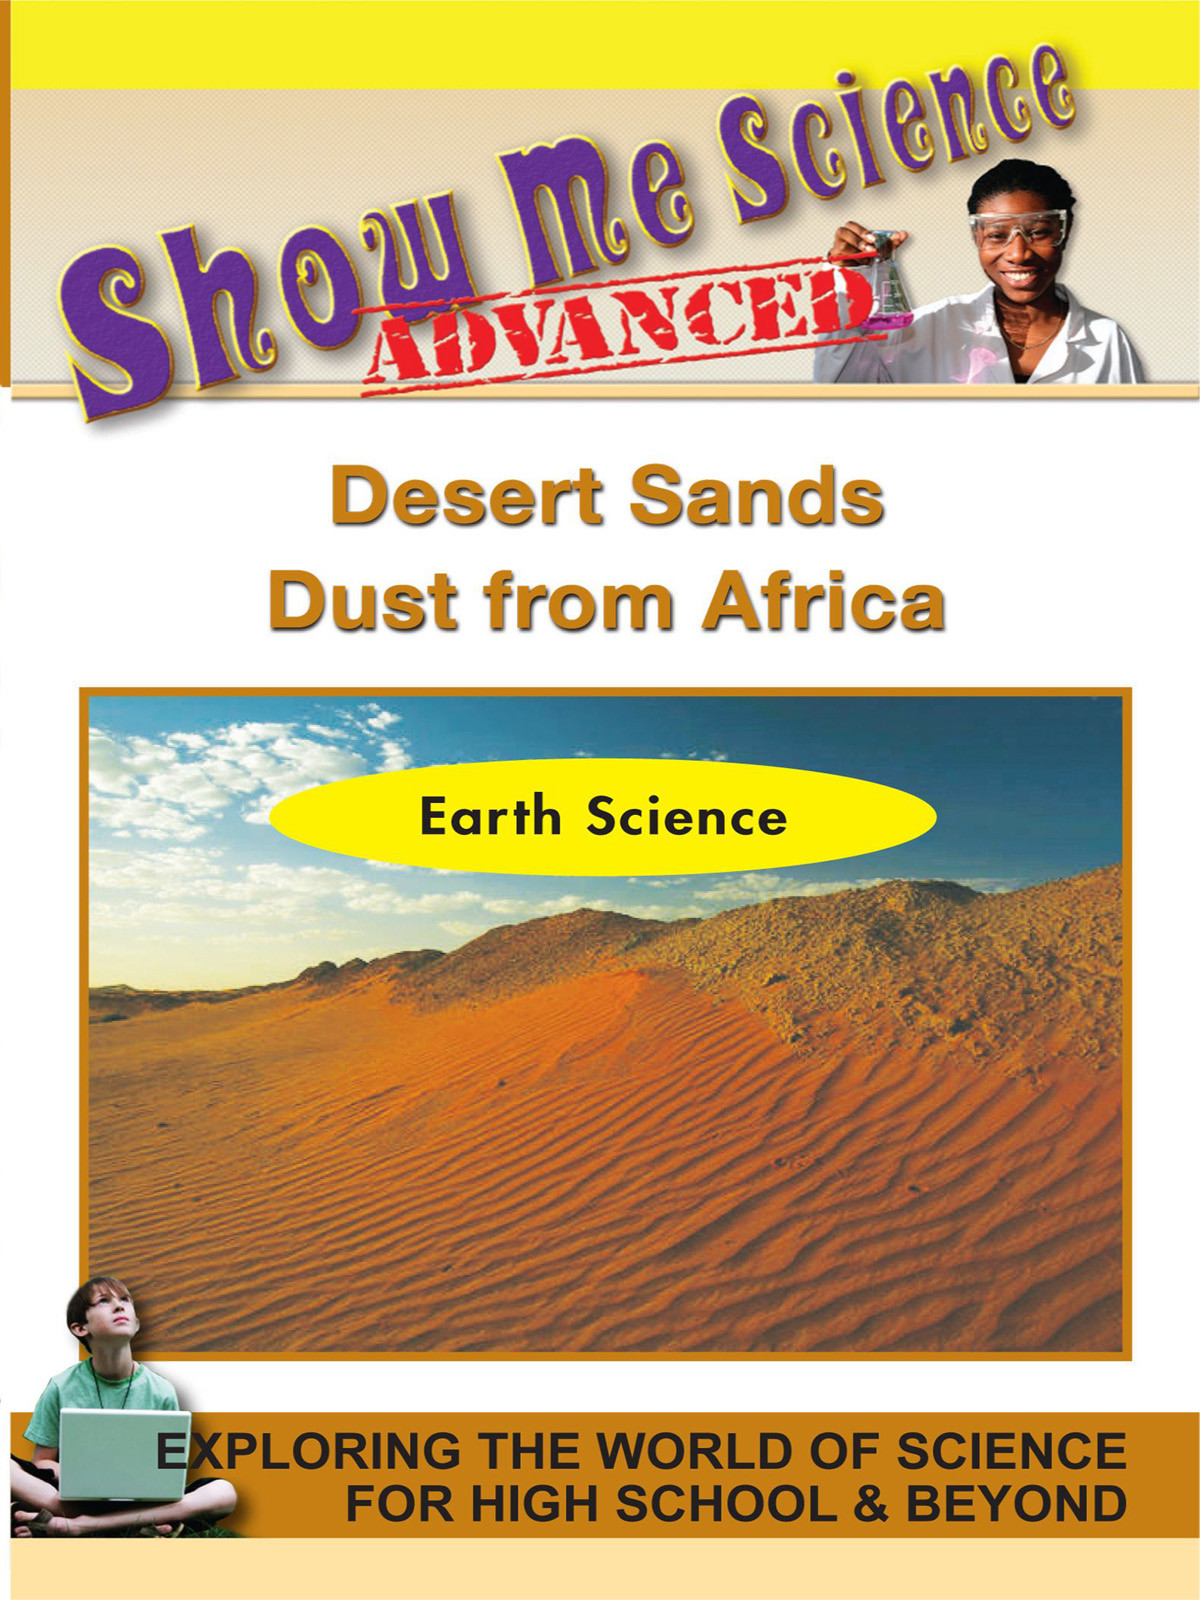 K4629 - Earth Science Desert Sands  Dust from Africa